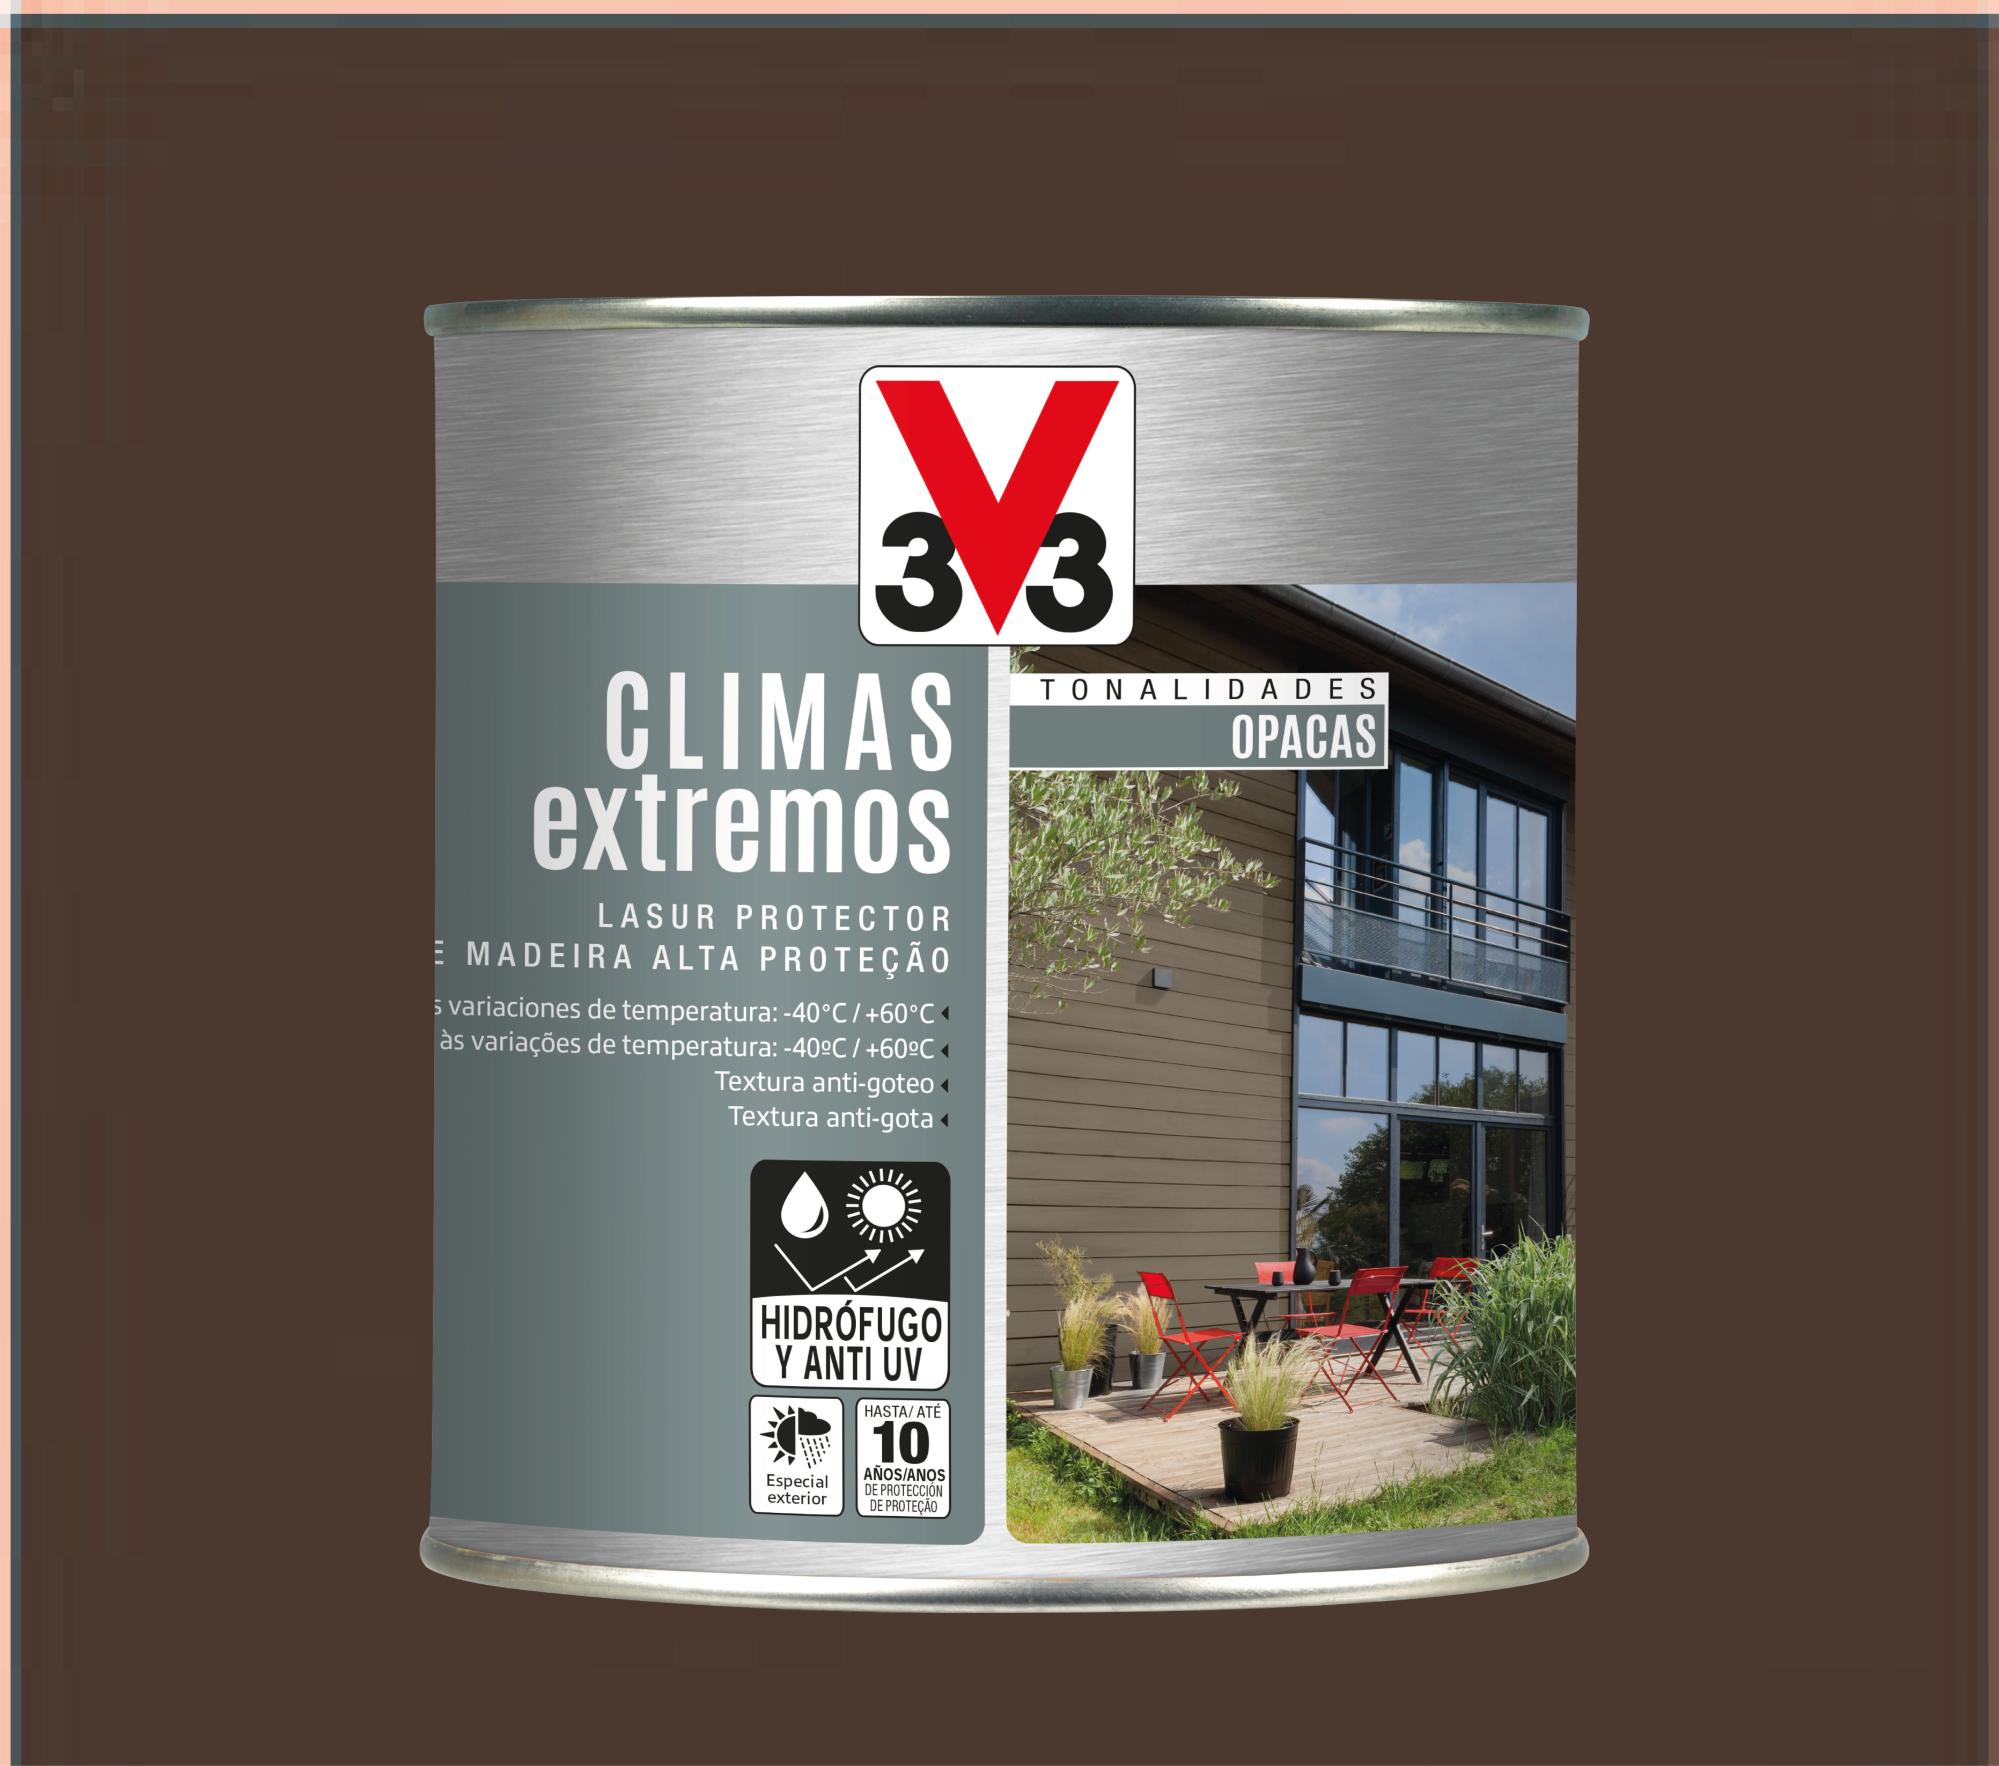 Protector exterior opaco climas extremos v33 satinado 750ml macadamia